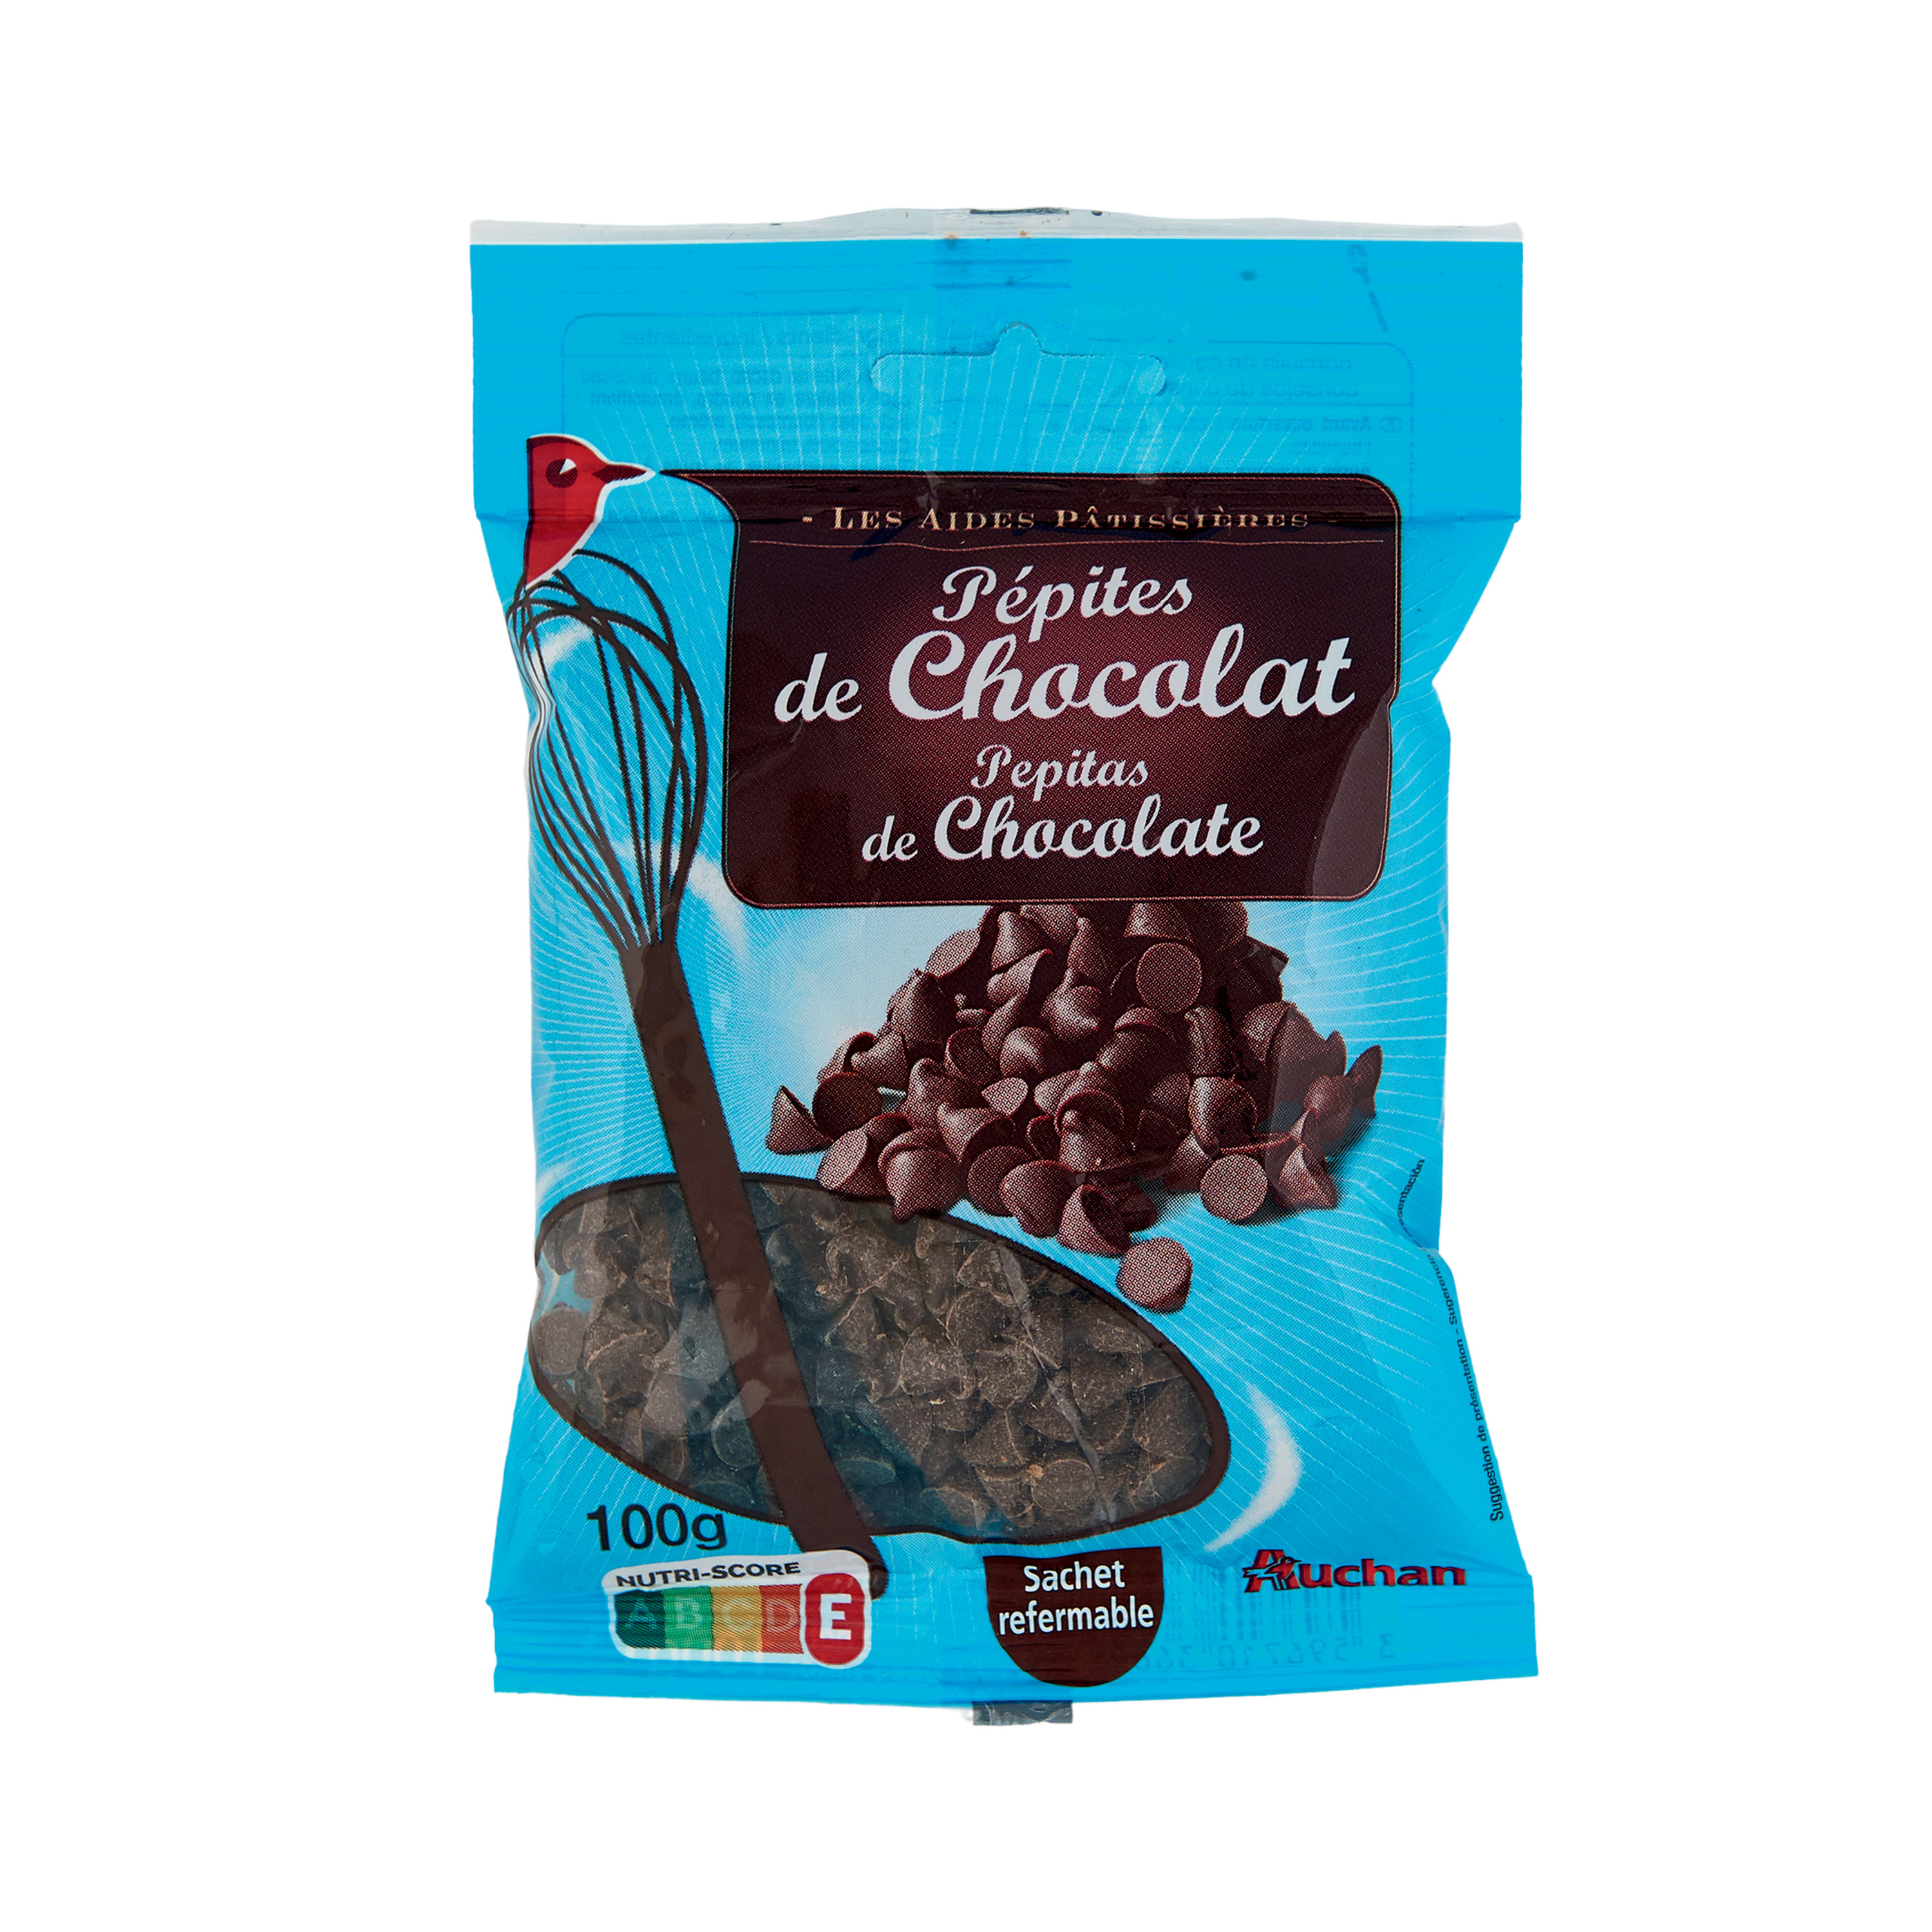 Pépites de Chocolat Noir - Vahiné - 100 g e